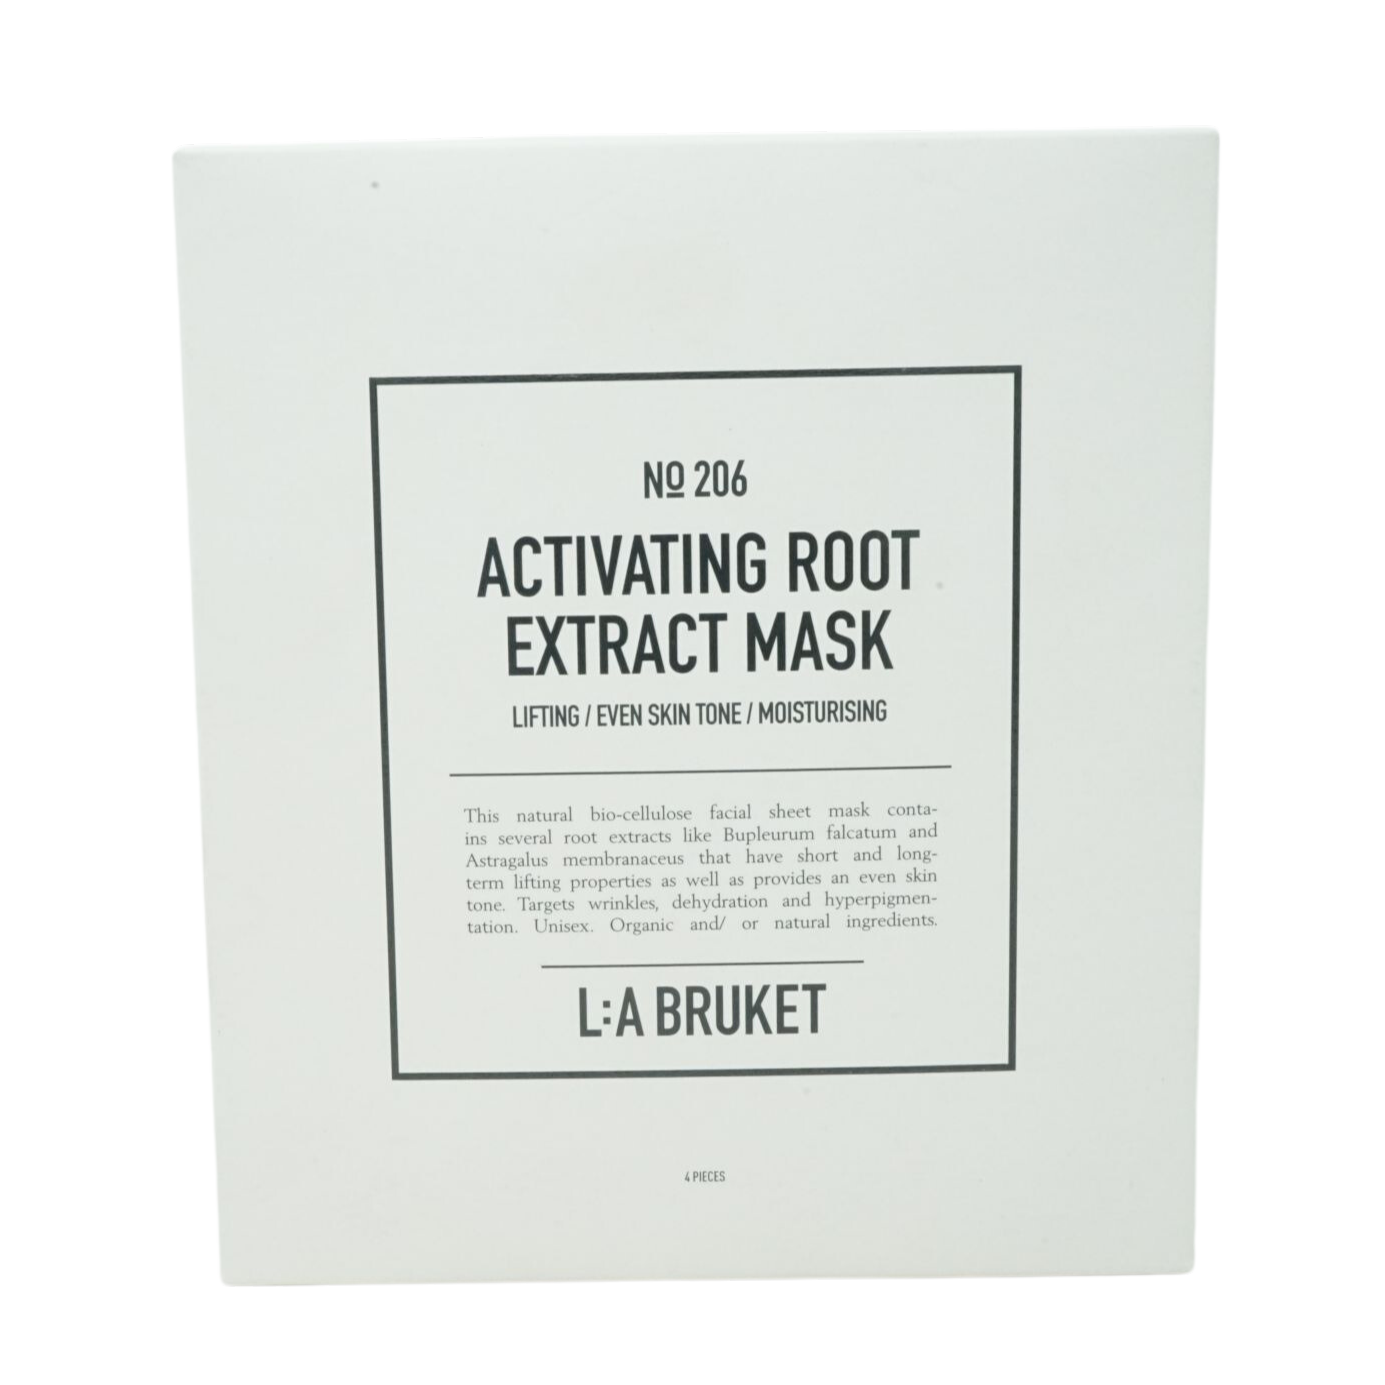 La Bruket No 206 Activating Root Gesichtsmaske 4 Stück